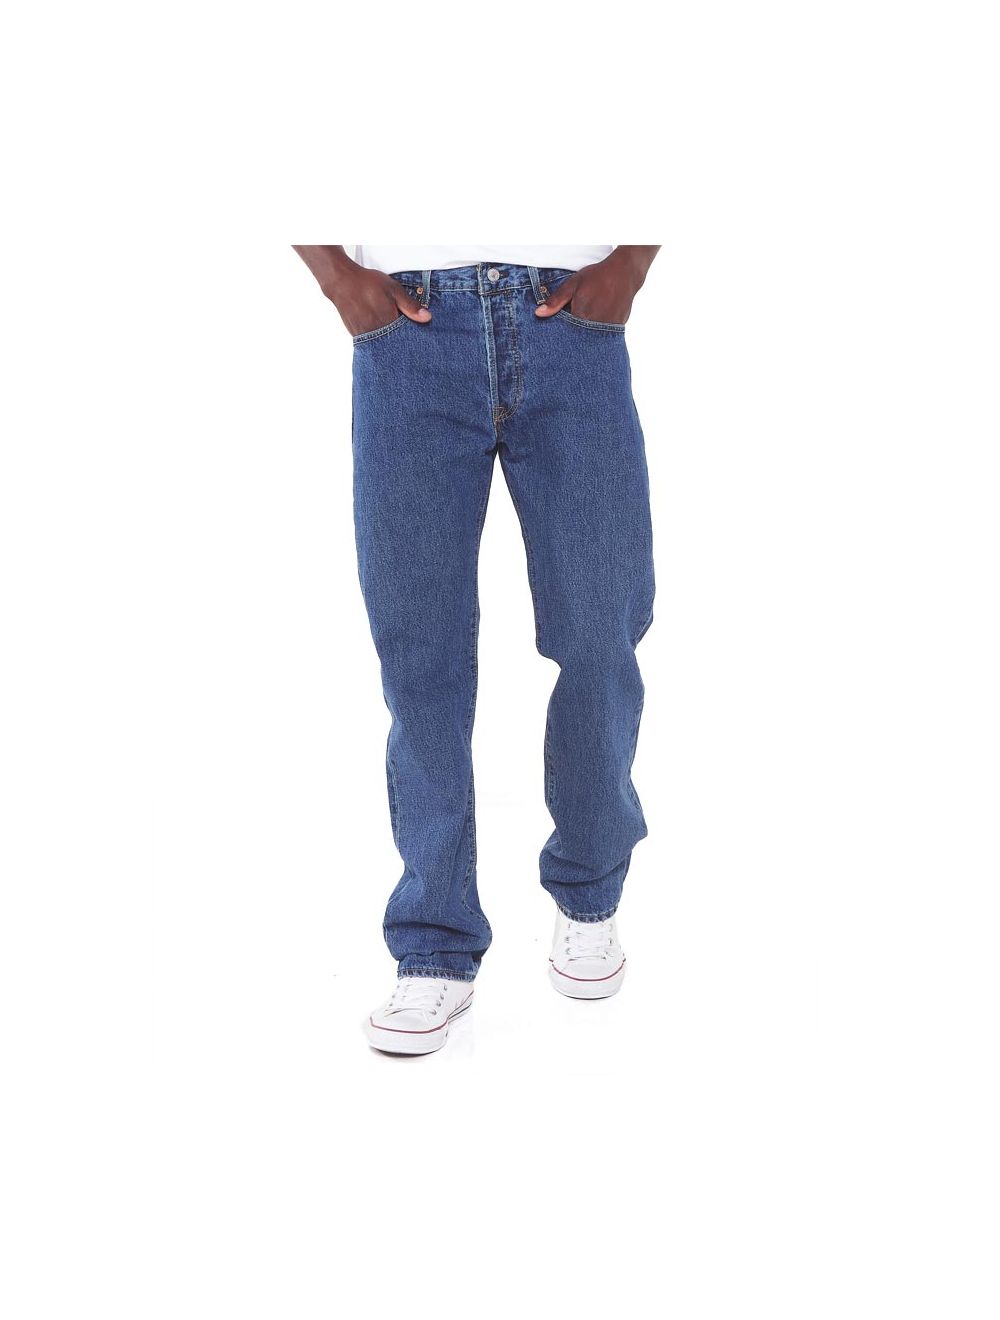 Shop Levi's 501 Jeans Mens Stonewash